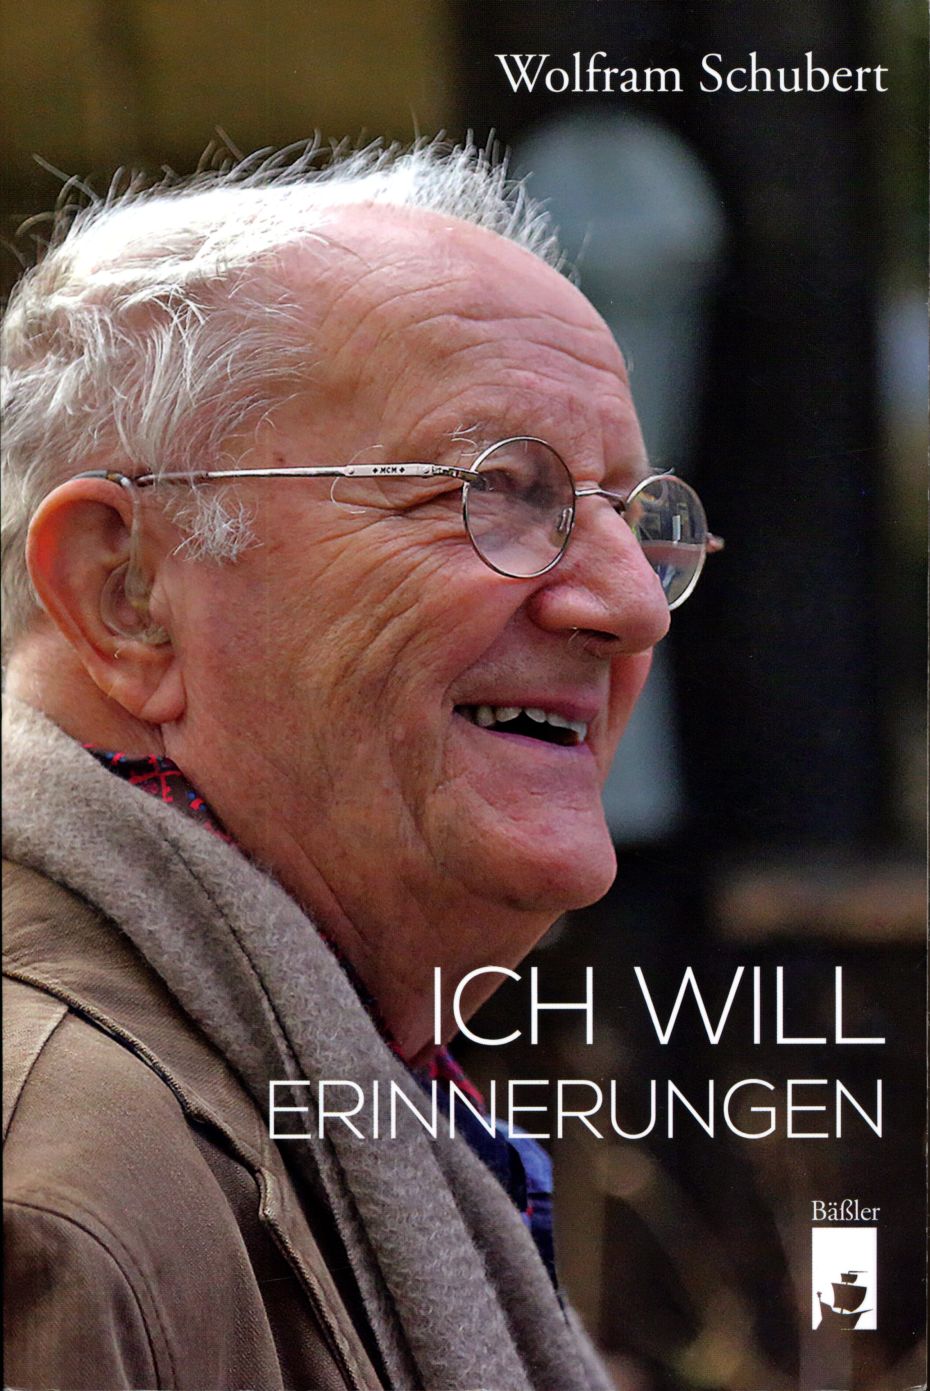 Buchcover mit Profilbild eines alten Mannes mit Brille